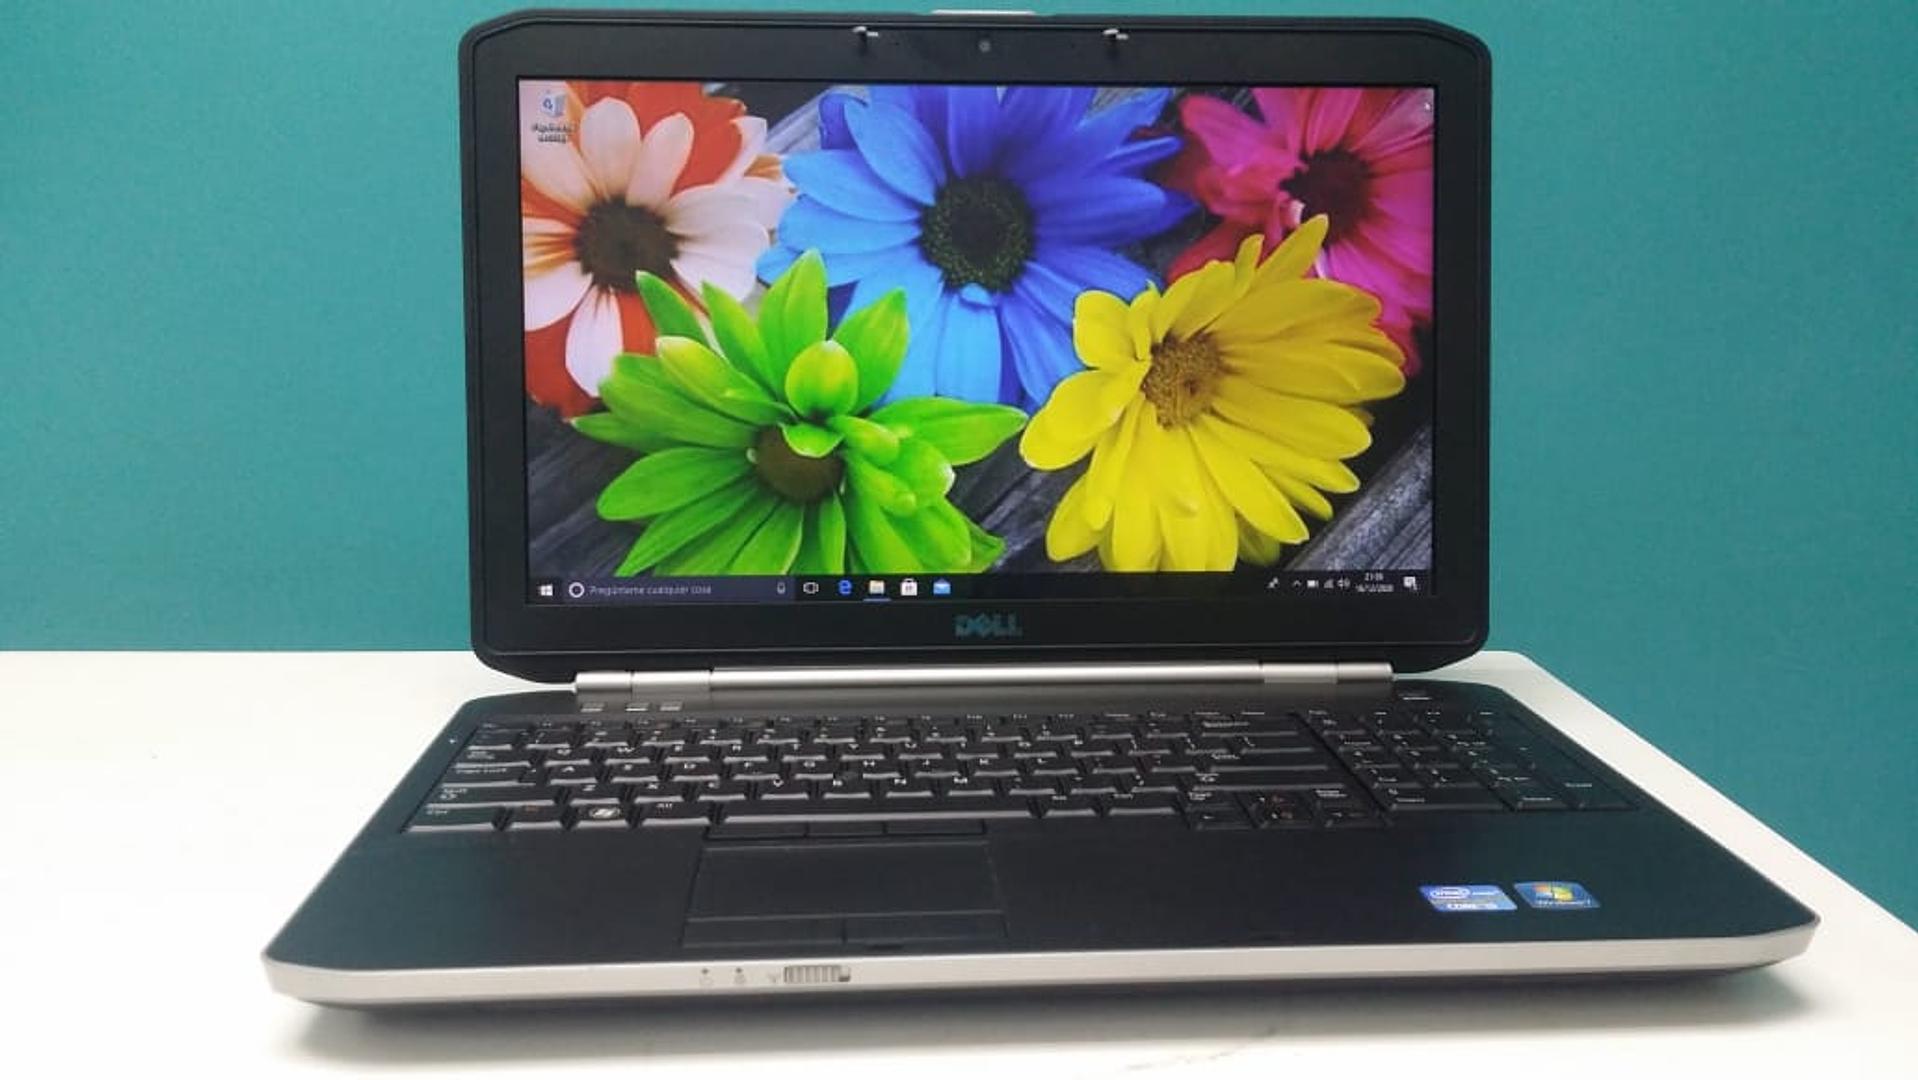 Corotos | Laptop Dell Latitude E5520 Core i5 250GB 8GB RAM 15.6 Pulgada